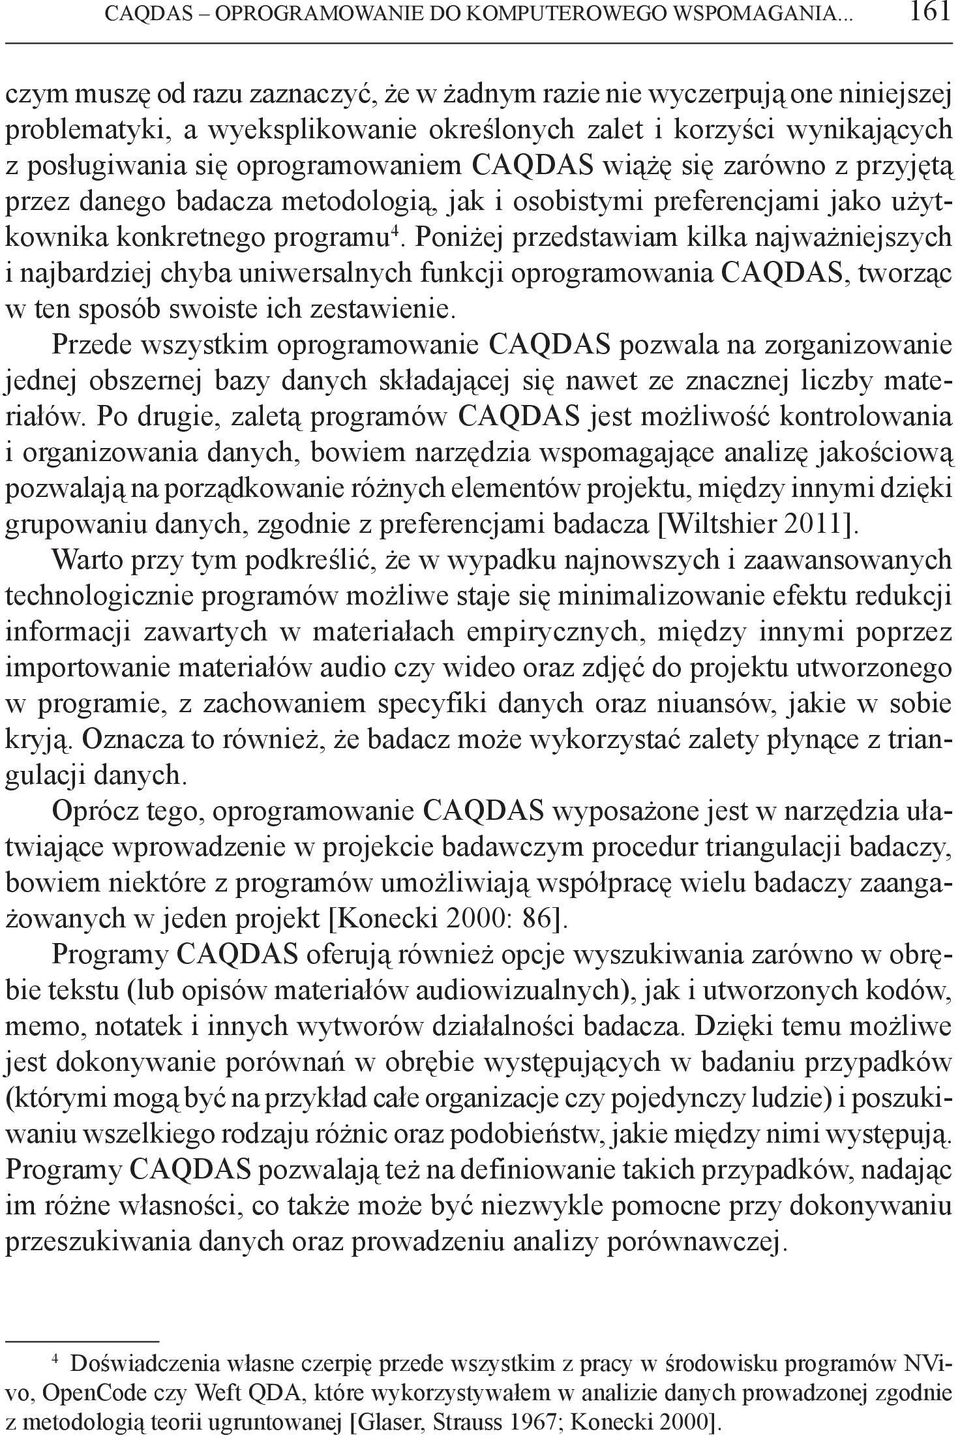 CAQDAS wiążę się zarówno z przyjętą przez danego badacza metodologią, jak i osobistymi preferencjami jako użytkownika konkretnego programu 4.